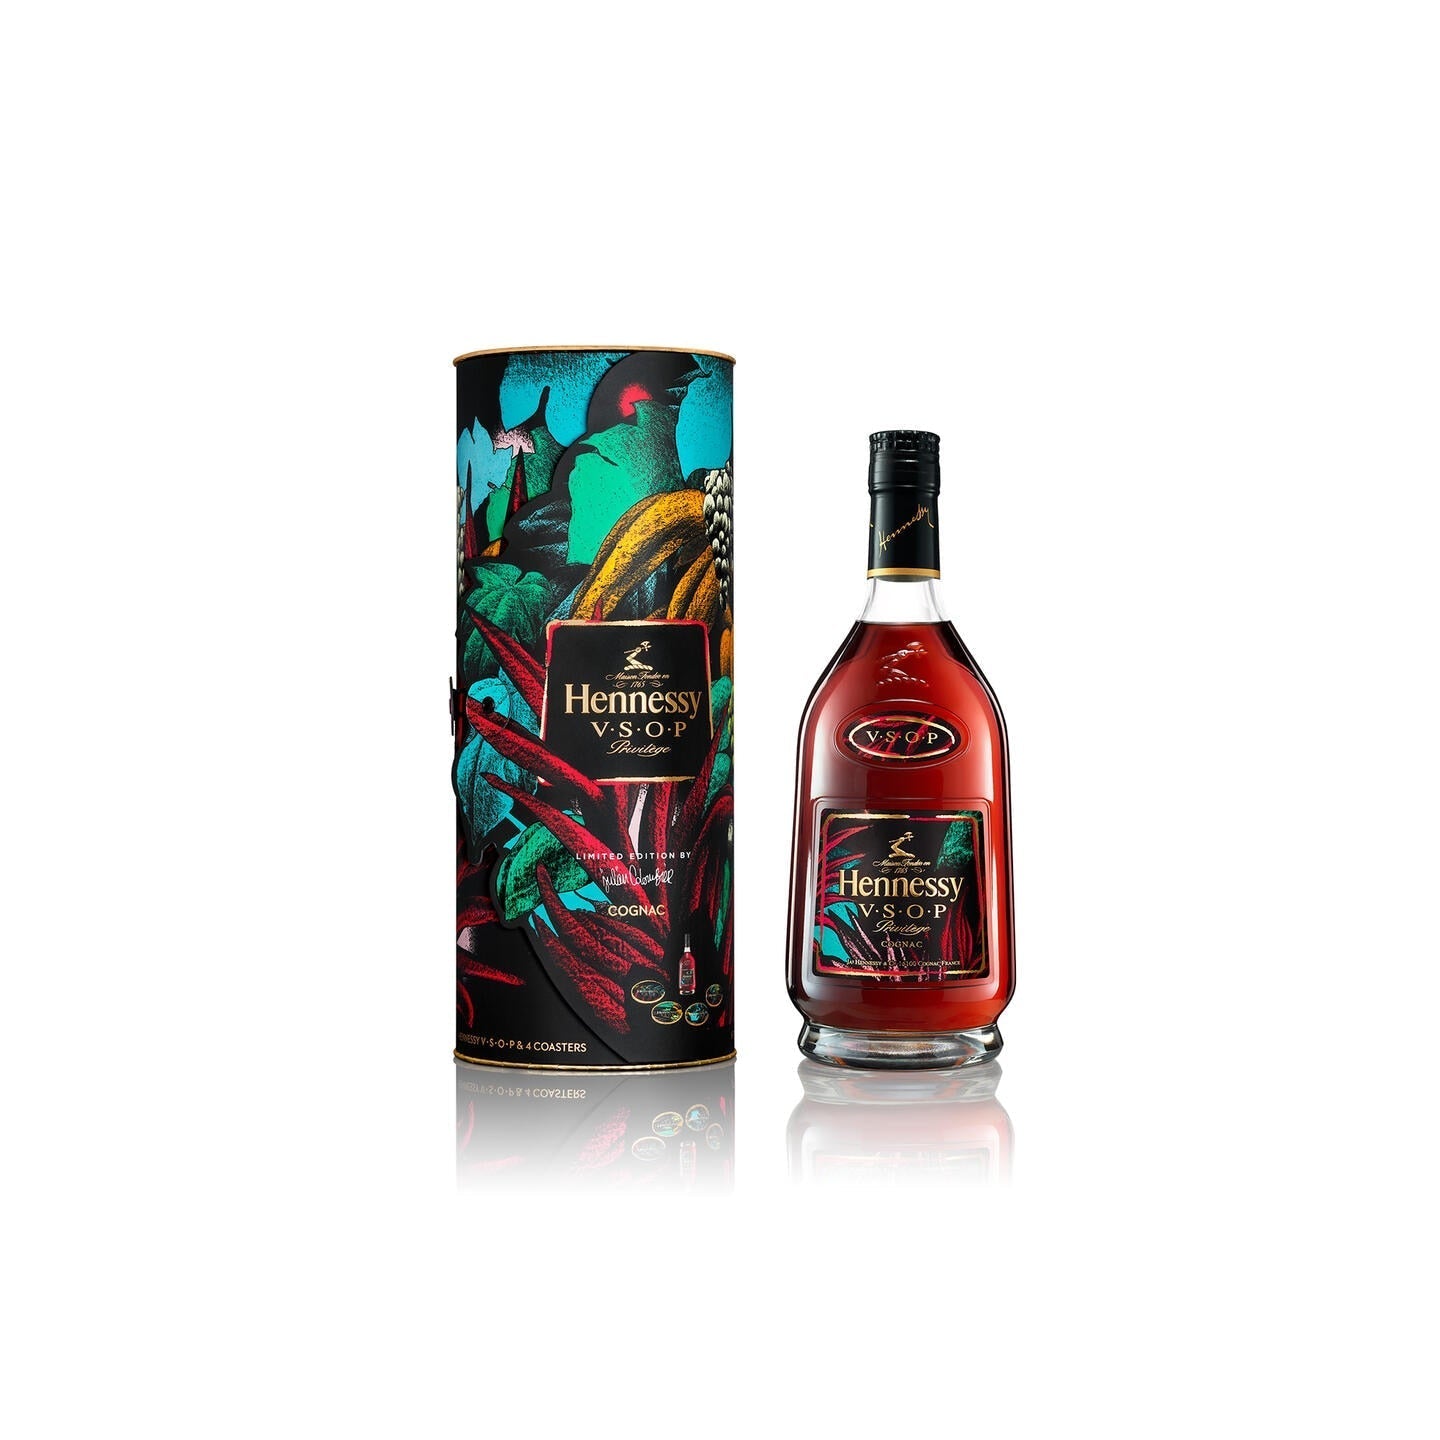 Buy Hennessy VSOP Privilege Julien Colombier Limited Edition Online -Supreme Booze